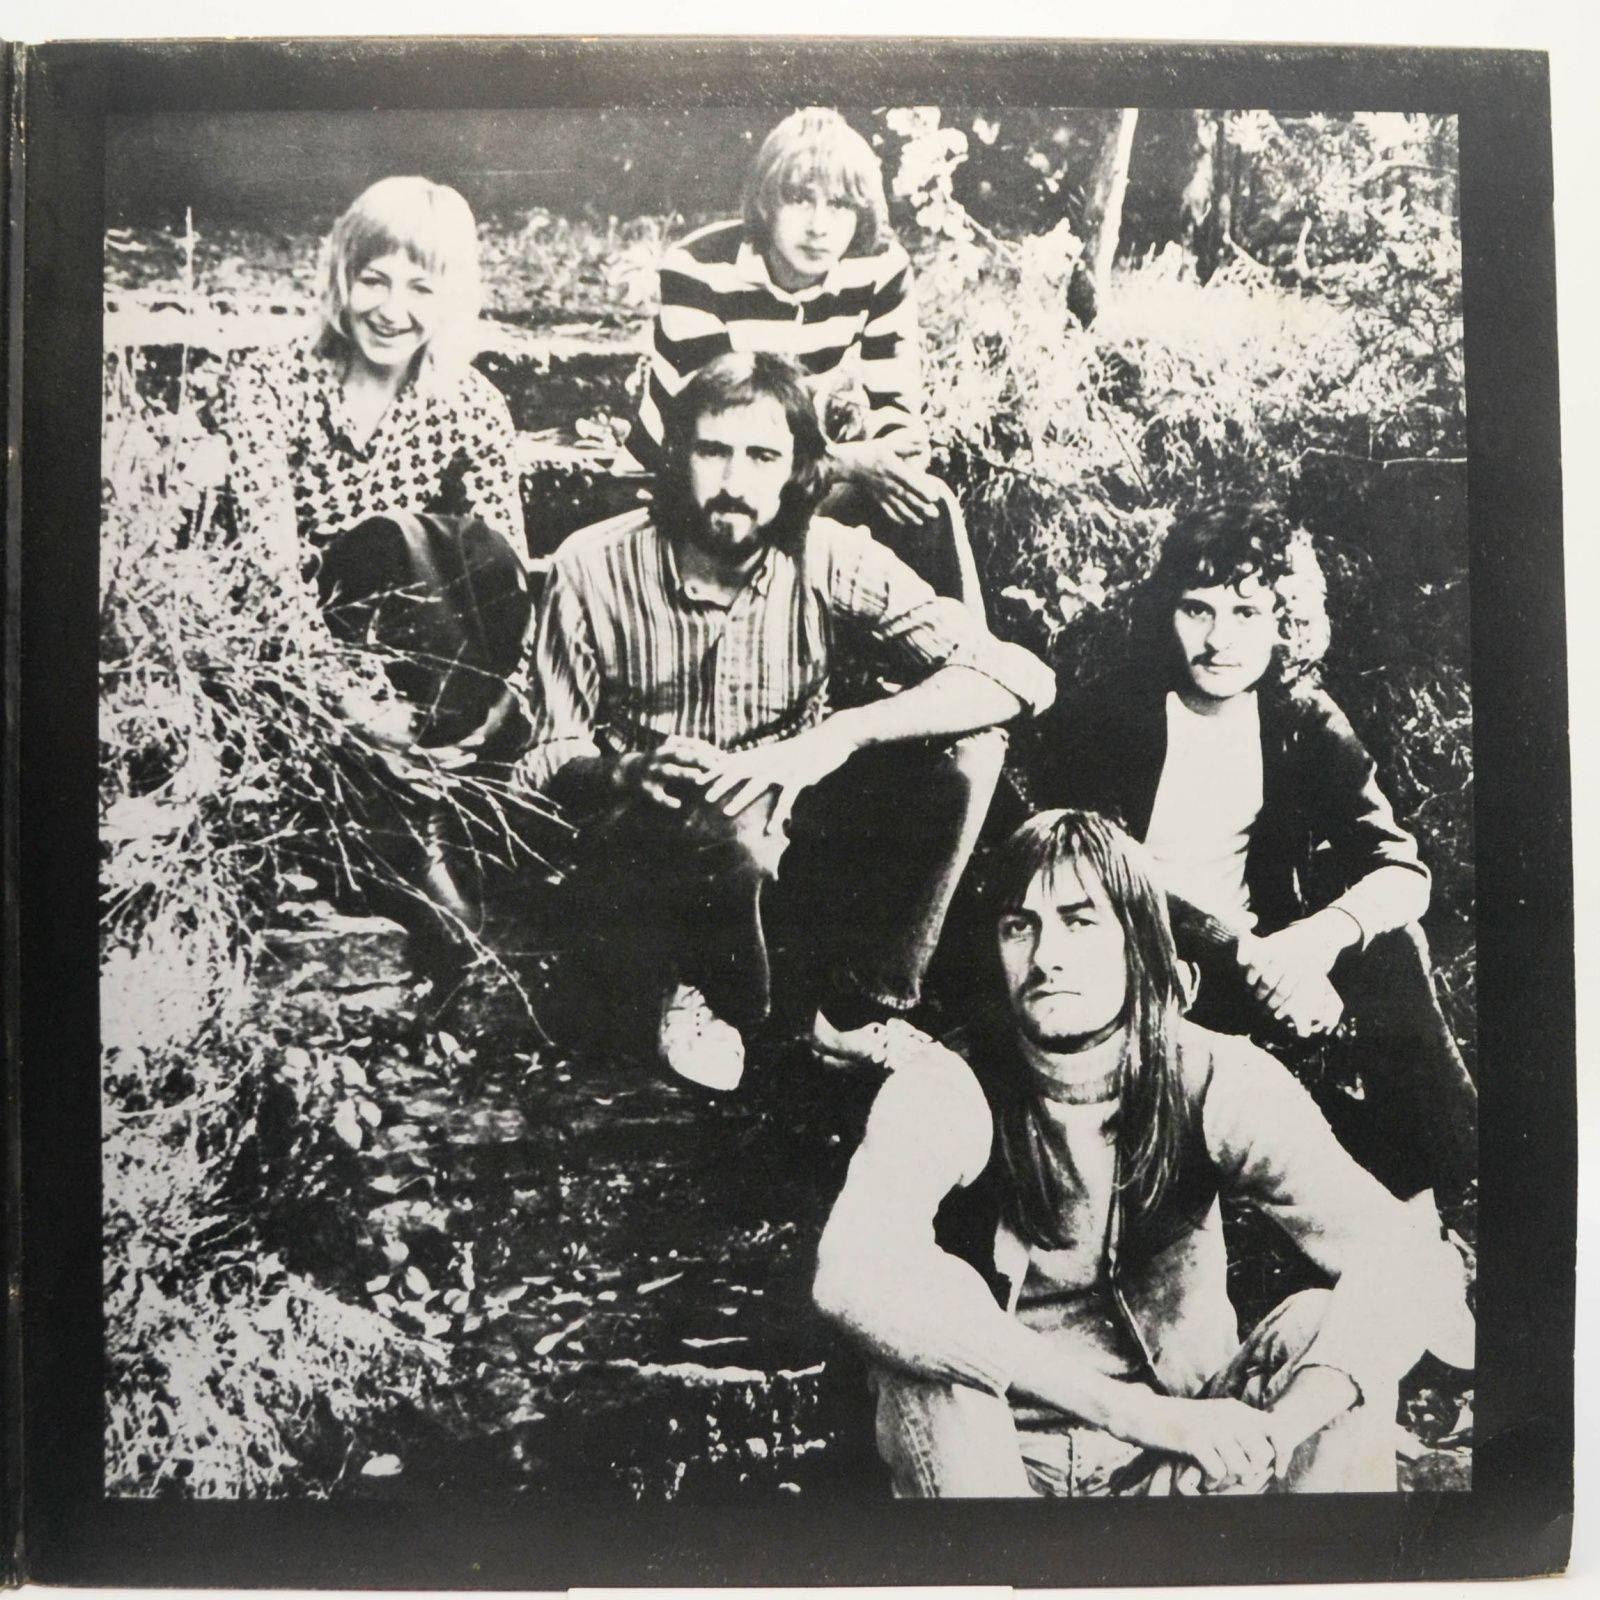 Fleetwood Mac — Fleetwood Mac Greatest Hits (UK), 1971